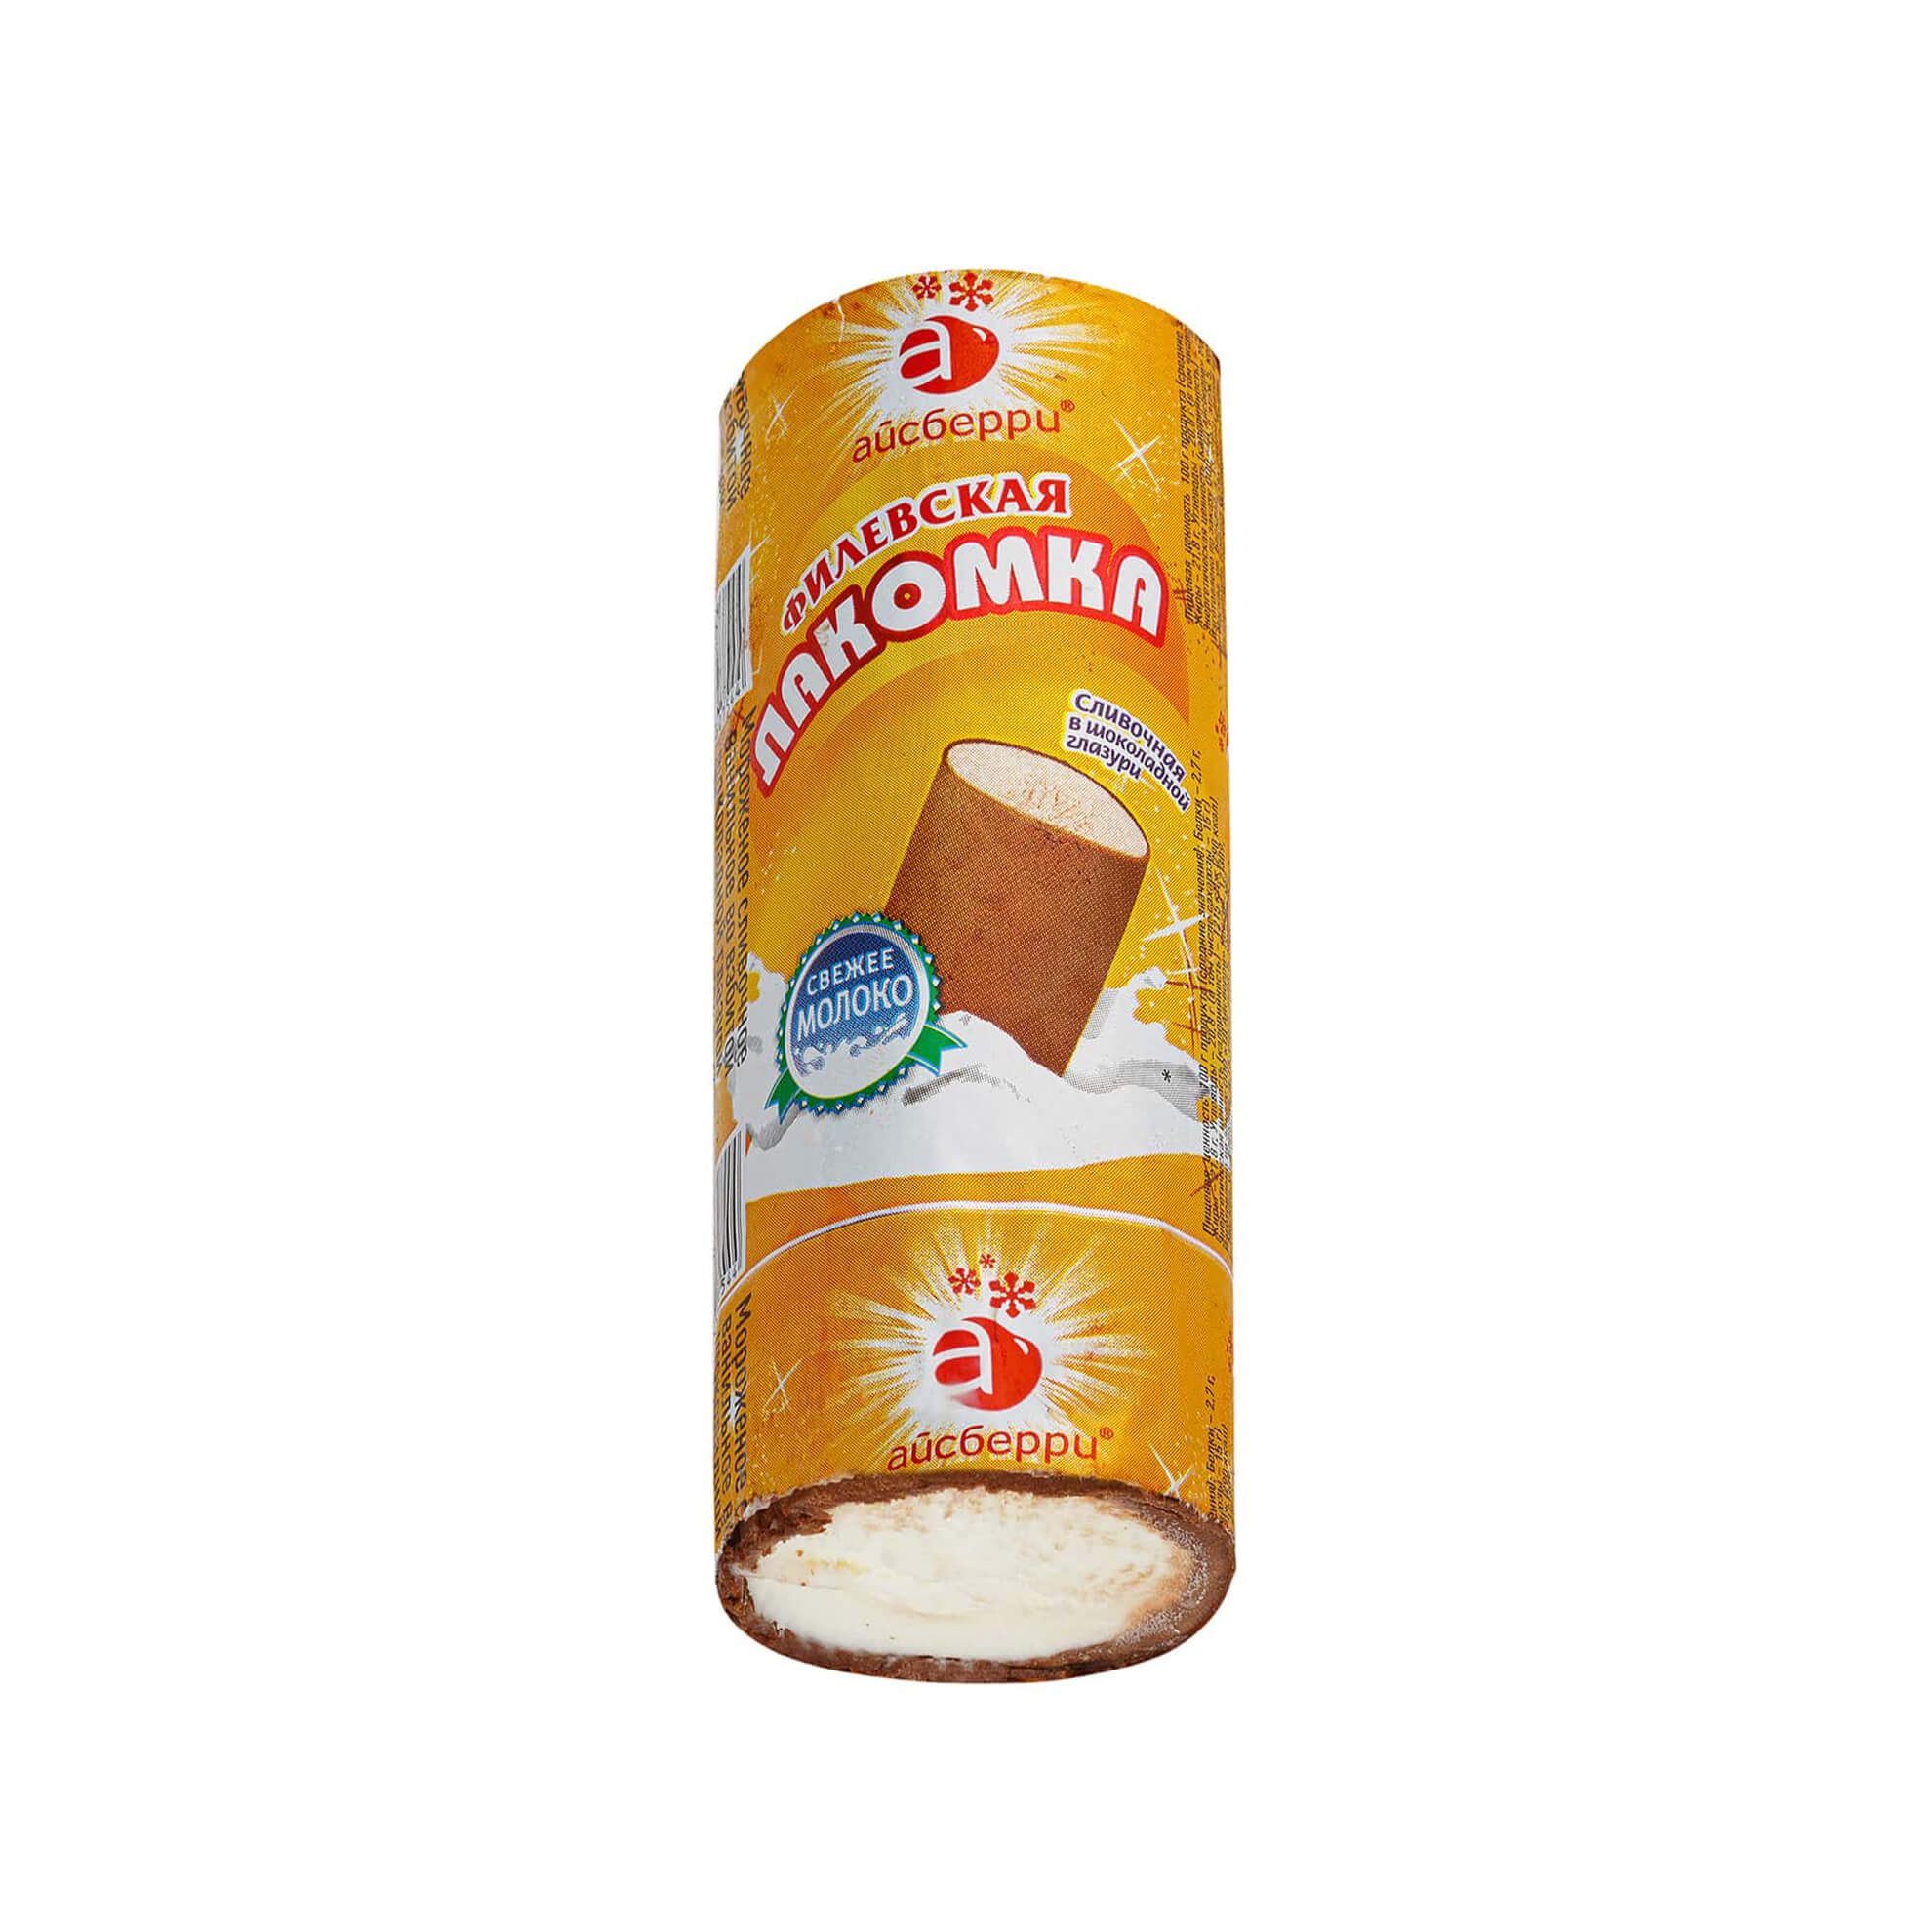 Мороженое сливочное ванильное во взбитой шоколадной глазури Филевская лакомка 90 г 7537LED, общий вид, купить оптом с доставкой по москве и московской области, недорого, низкая цена